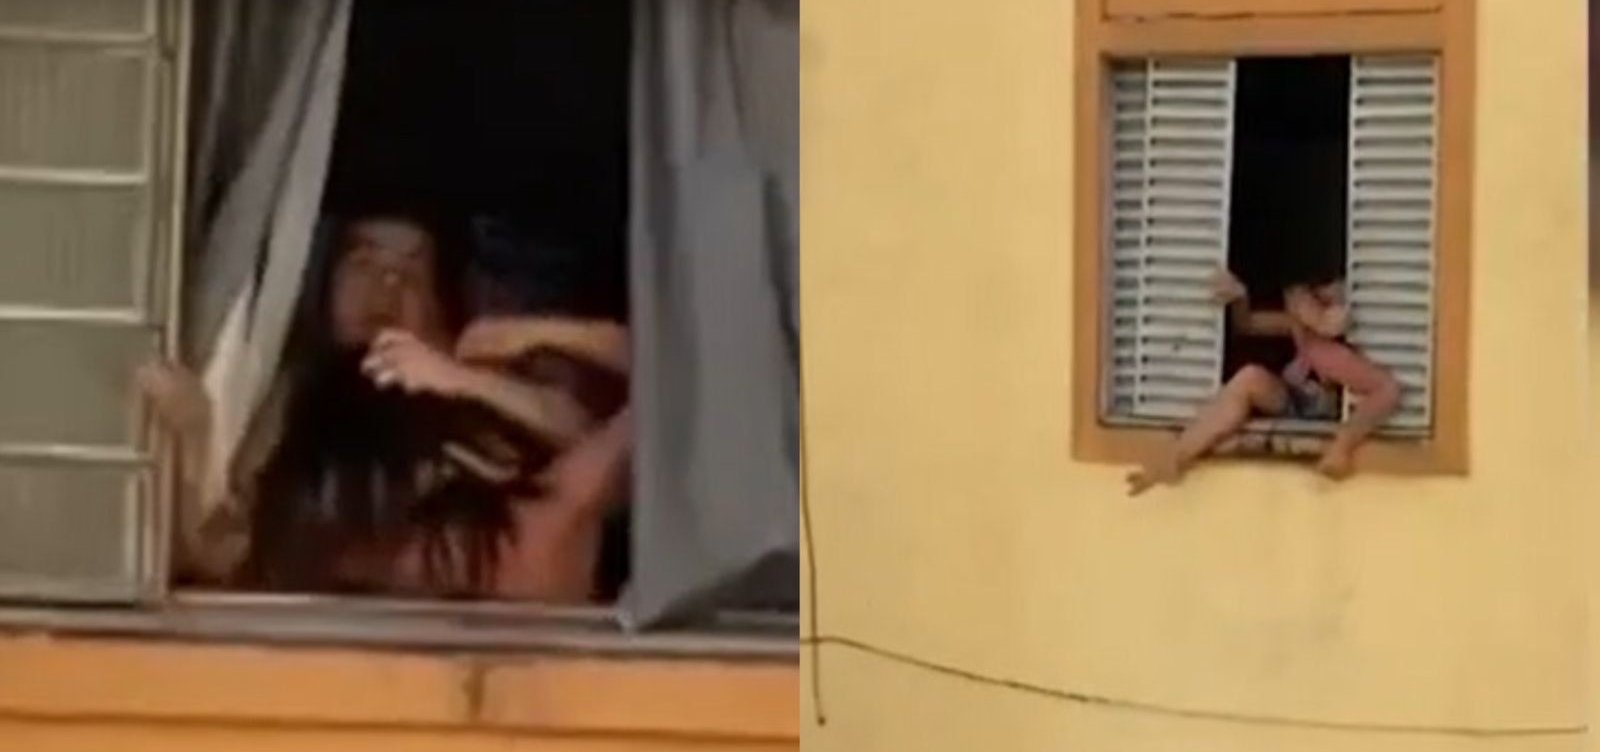 Homem é preso após mulher grávida tentar pular de janela para fugir de agressões no Rio de Janeiro